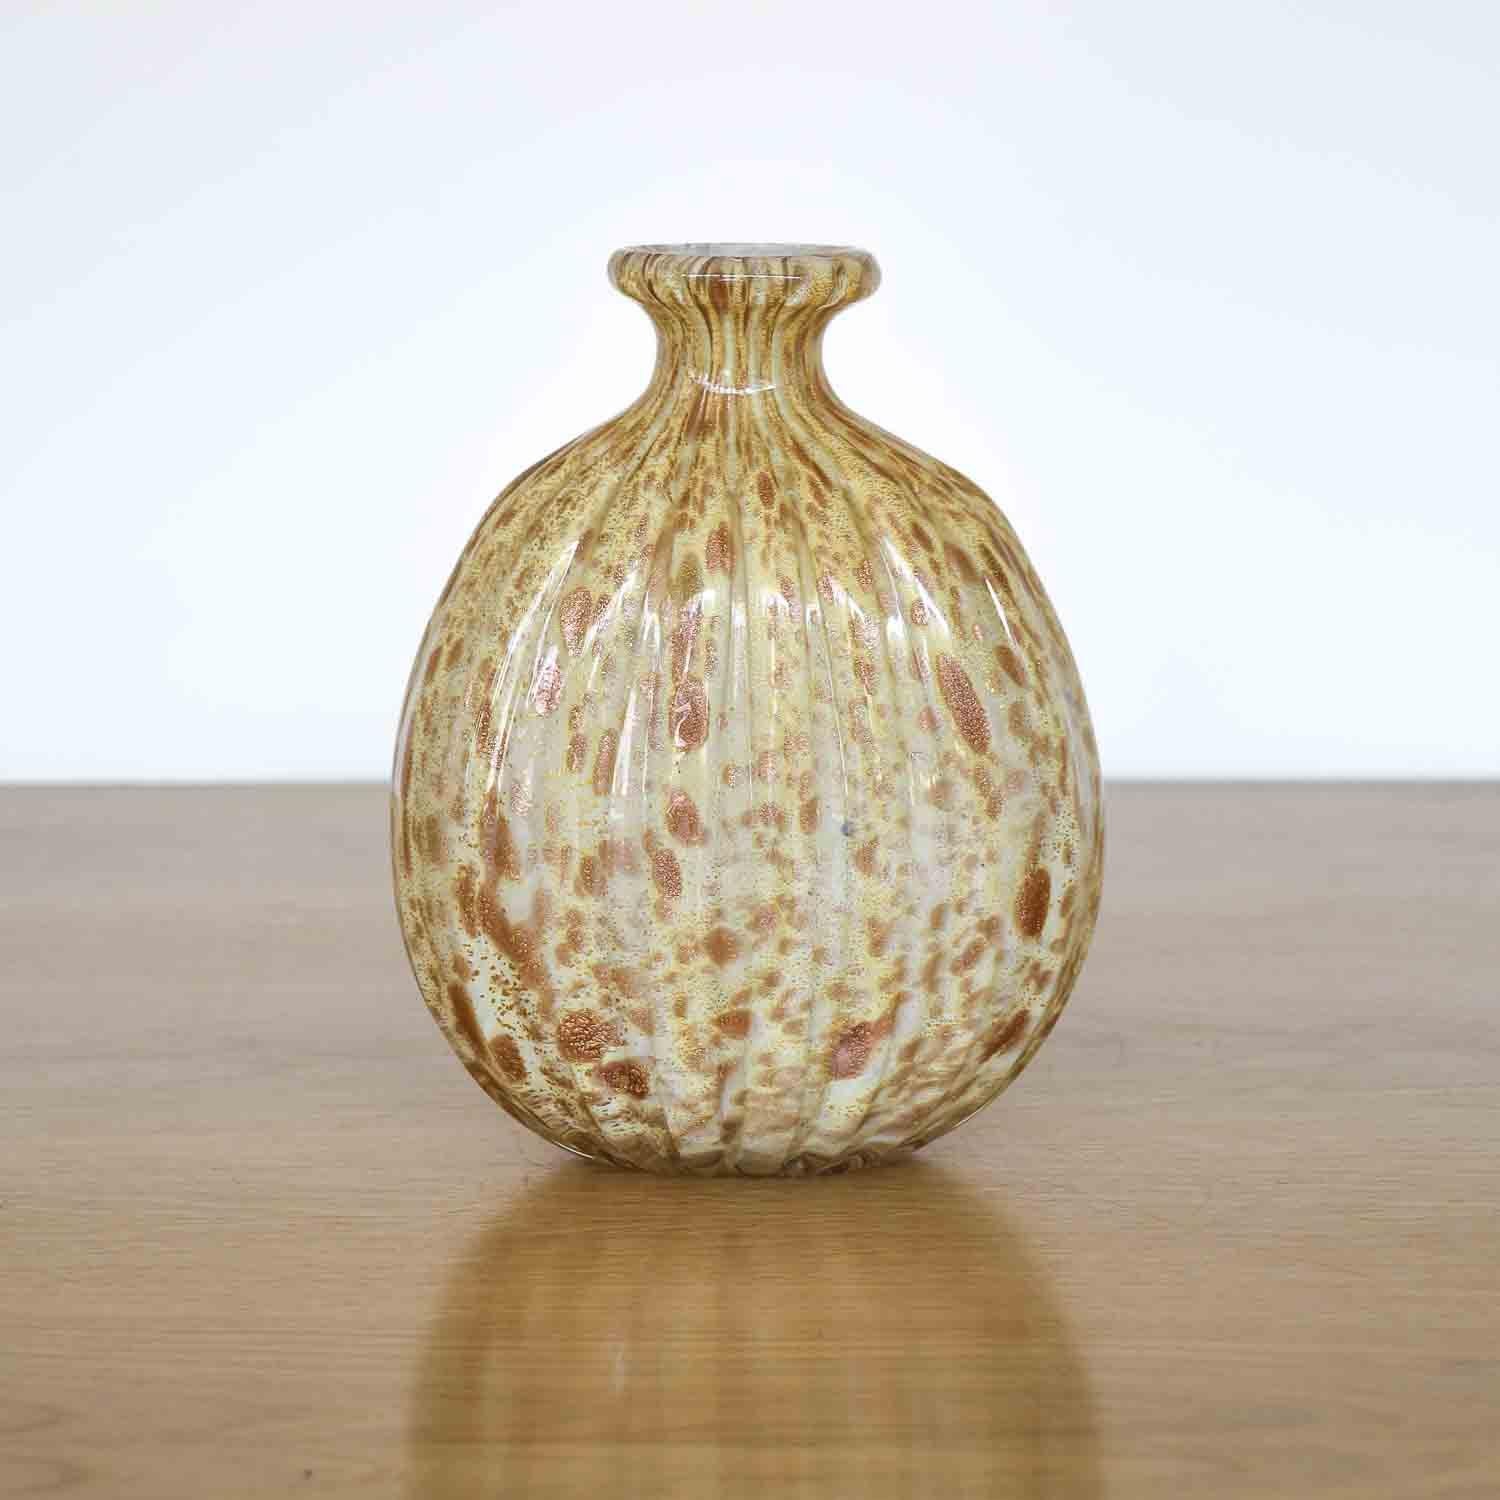 Magnifique vase italien vintage en verre de Murano de couleur or. Verre soufflé nervuré avec des mouchetures d'or et de bronze. Une pièce unique et étonnante.